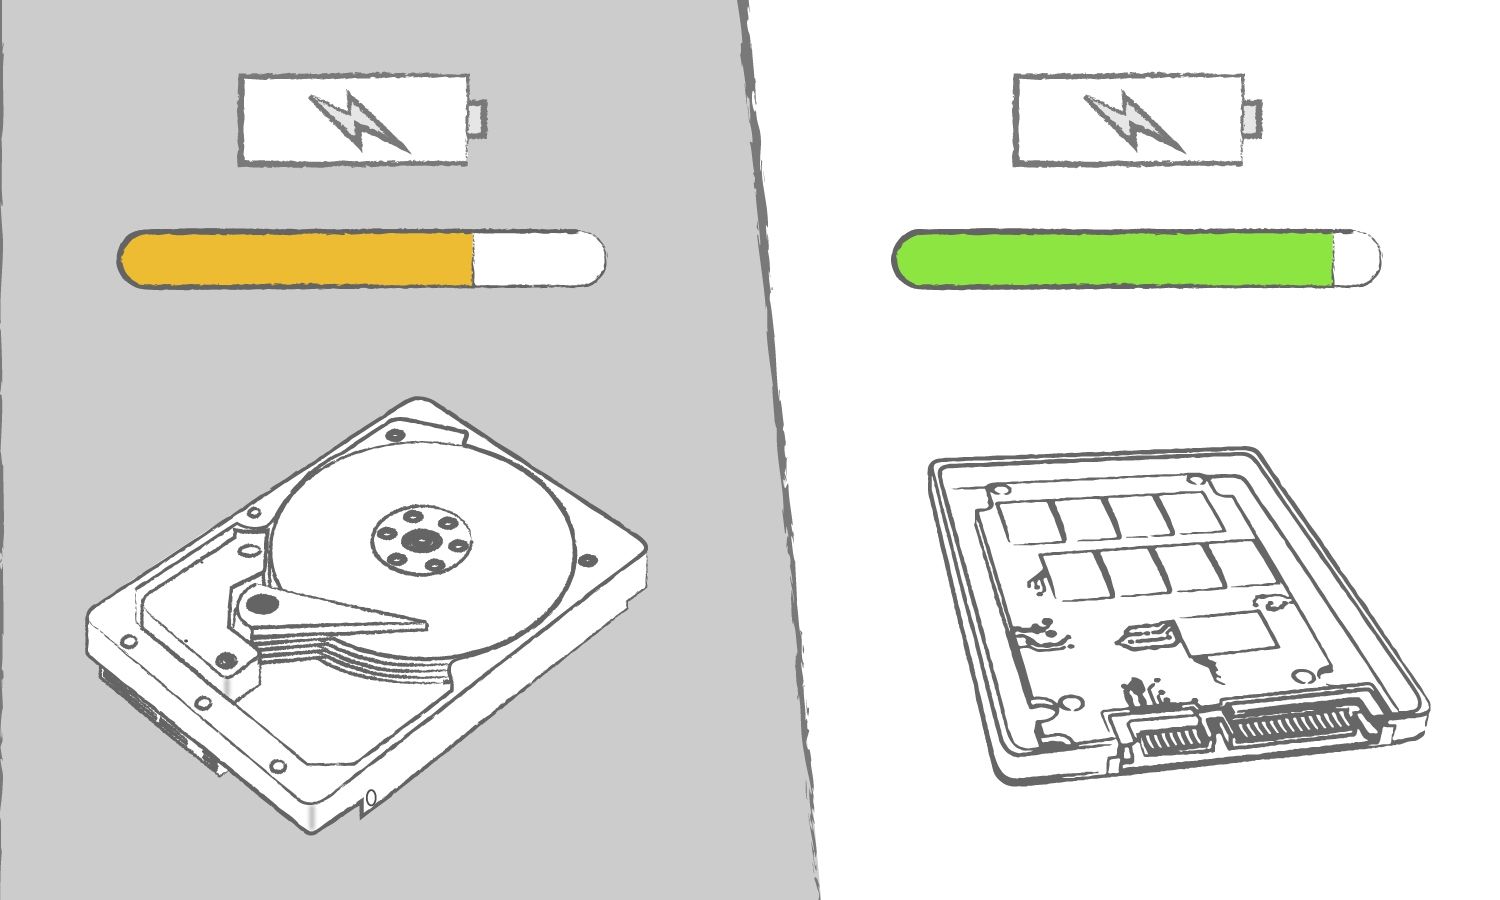 Un’illustrazione che mostra i benefici di un SSD rispetto a un’unità disco rigido in termini di efficienza del computer